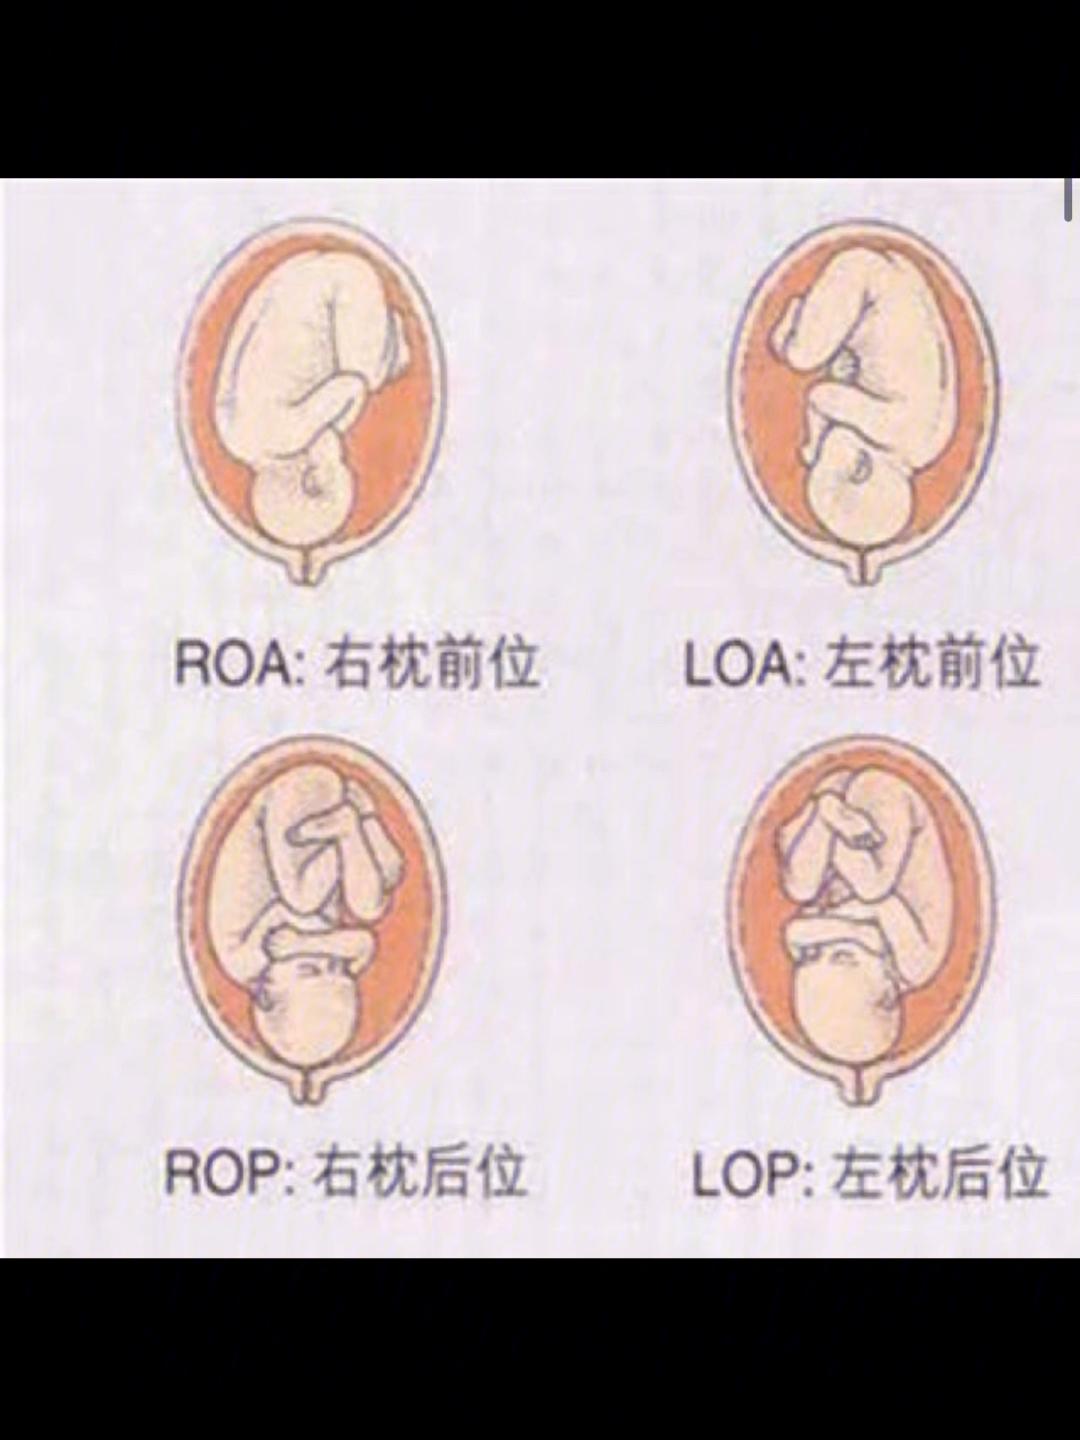 胎方位LSA图片